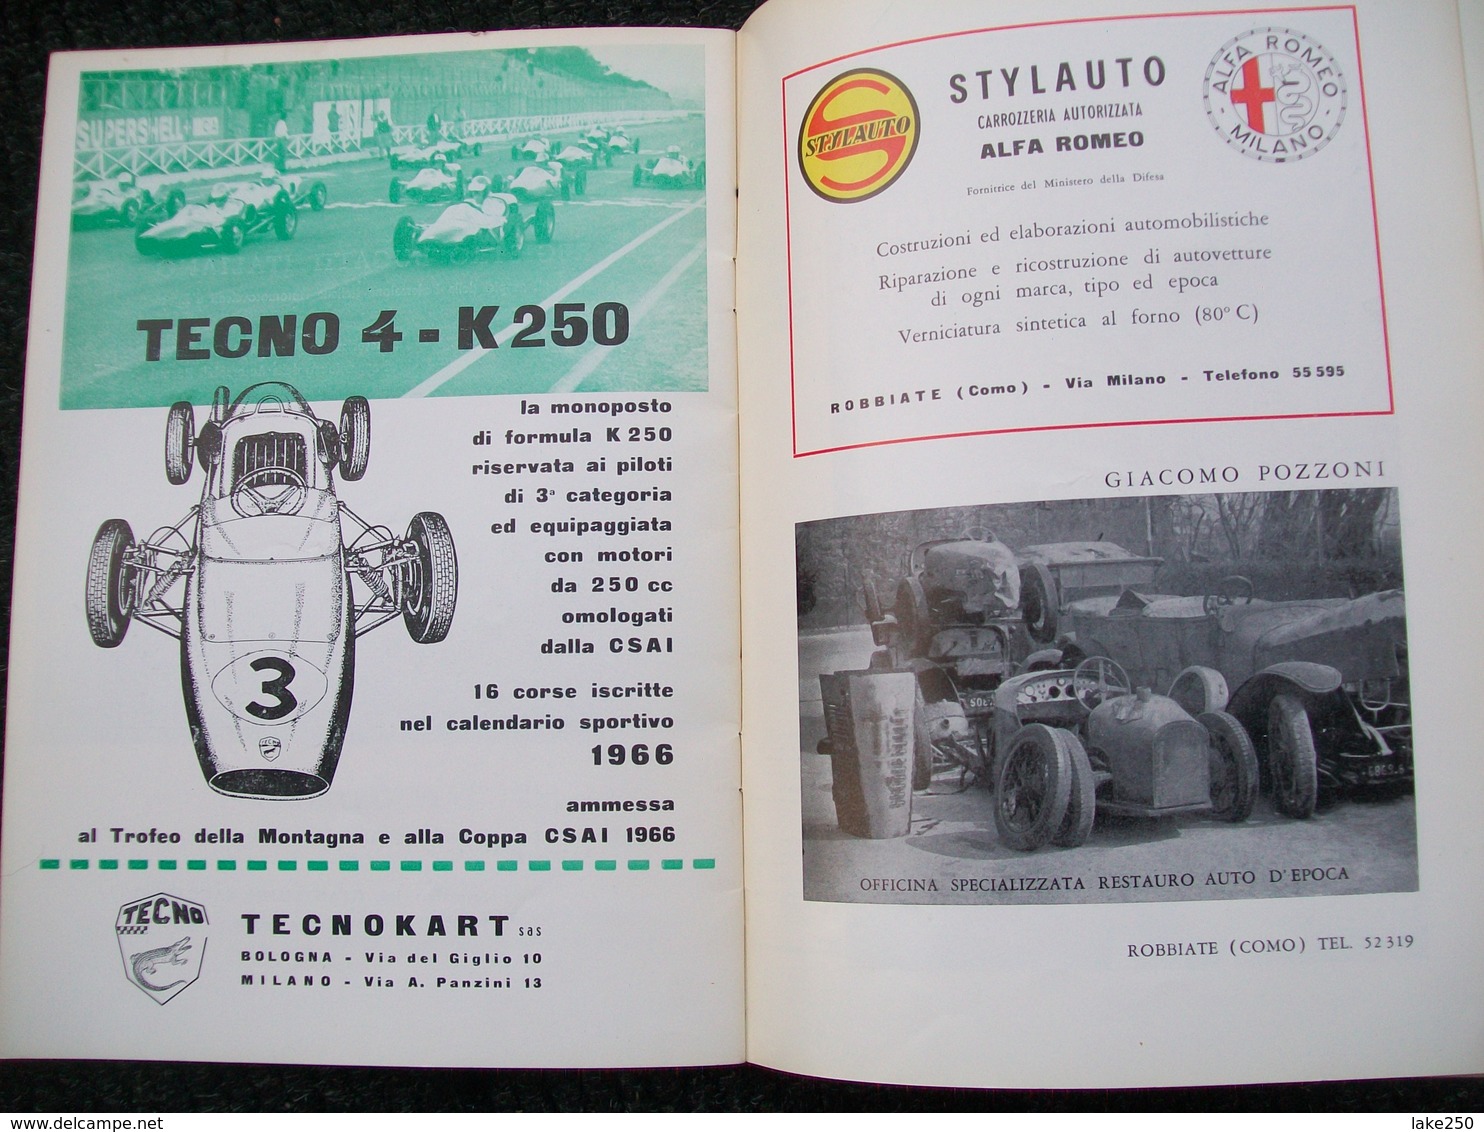 VIII COPPA MONZA Autodromo Nazionale Di Monza 1966 - Moteurs